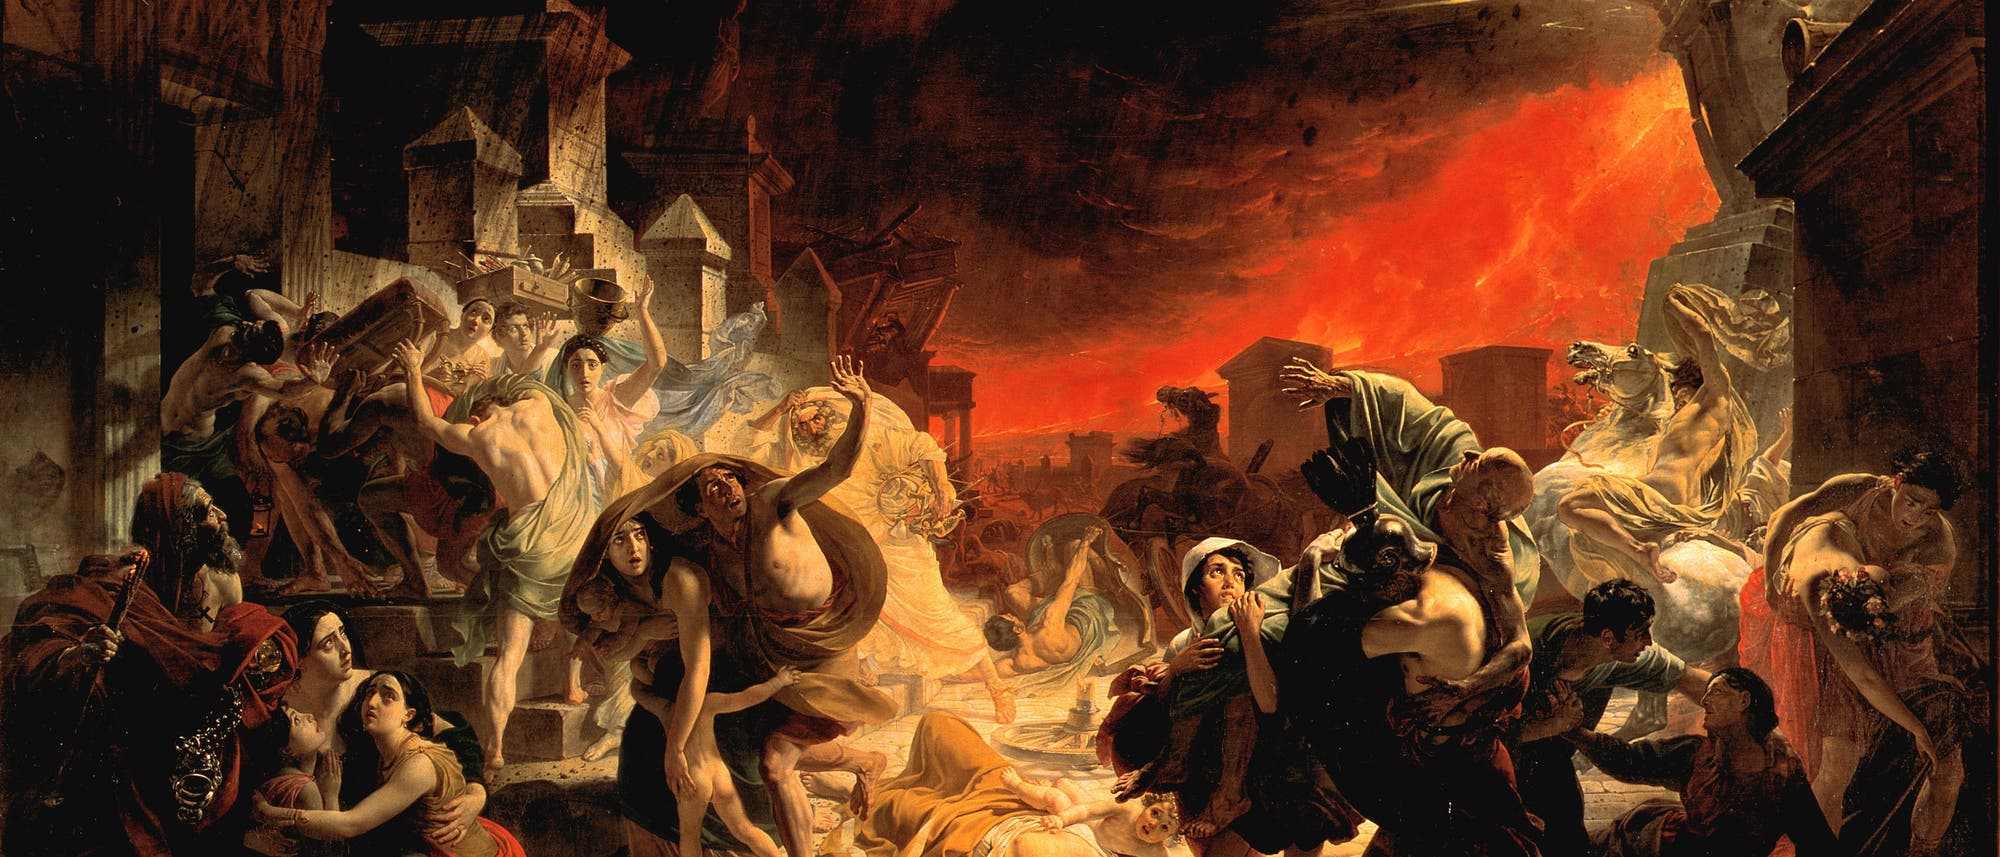 Gemälde des russischen Malers Karl Brjullow »Der letzte Tag von Pompeji« aus den Jahren 1830 bis 1833. Es zeigt Menschen auf der Flucht vor dem Ausbruch des Vesuvs.